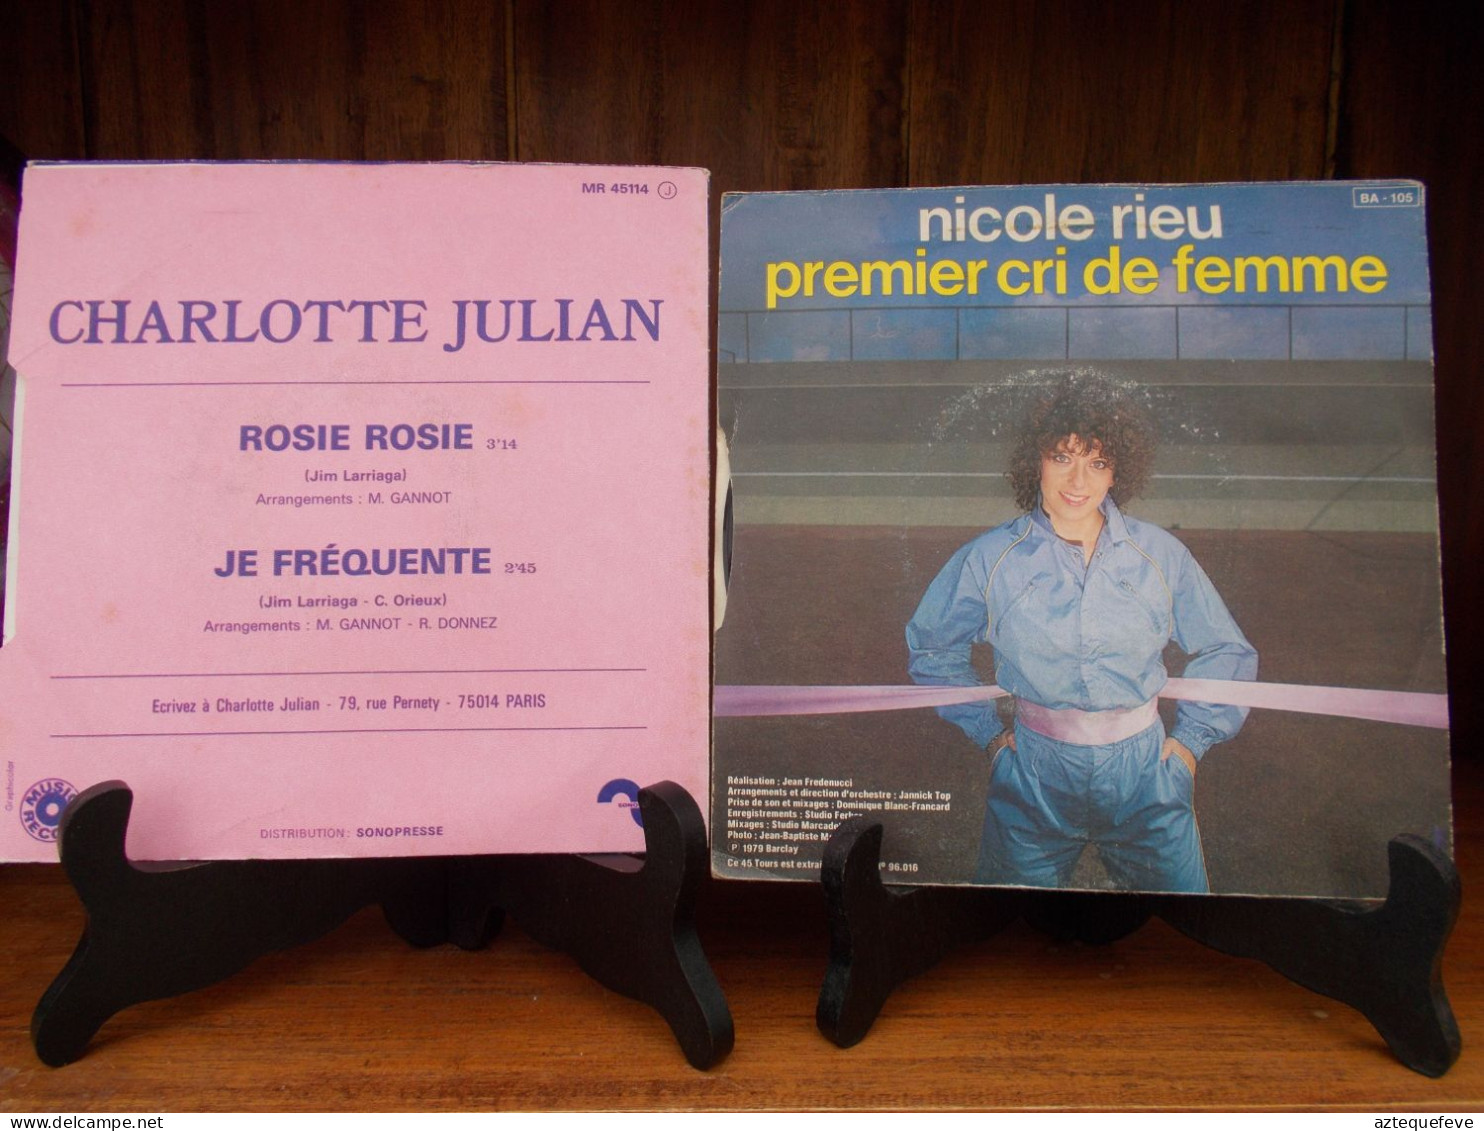 2 VINYLS CHARLOTTE JULIAN ET NICOLE RIEU 1979 - Autres - Musique Française